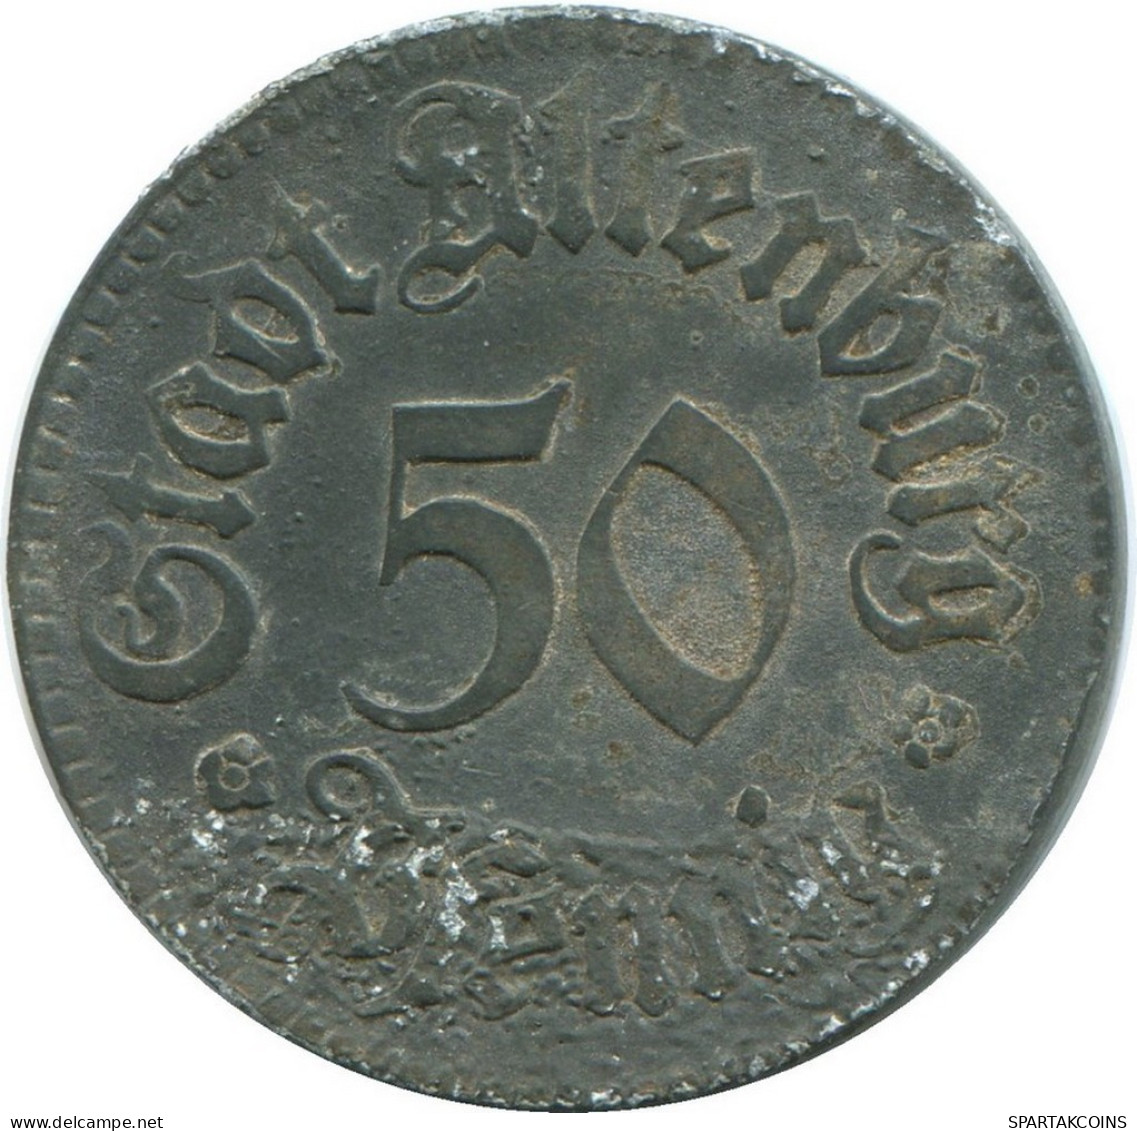 50 PFENNIG 1920 ALTENBURG GERMANY Coin #DE10518.6.U.A - 50 Renten- & 50 Reichspfennig